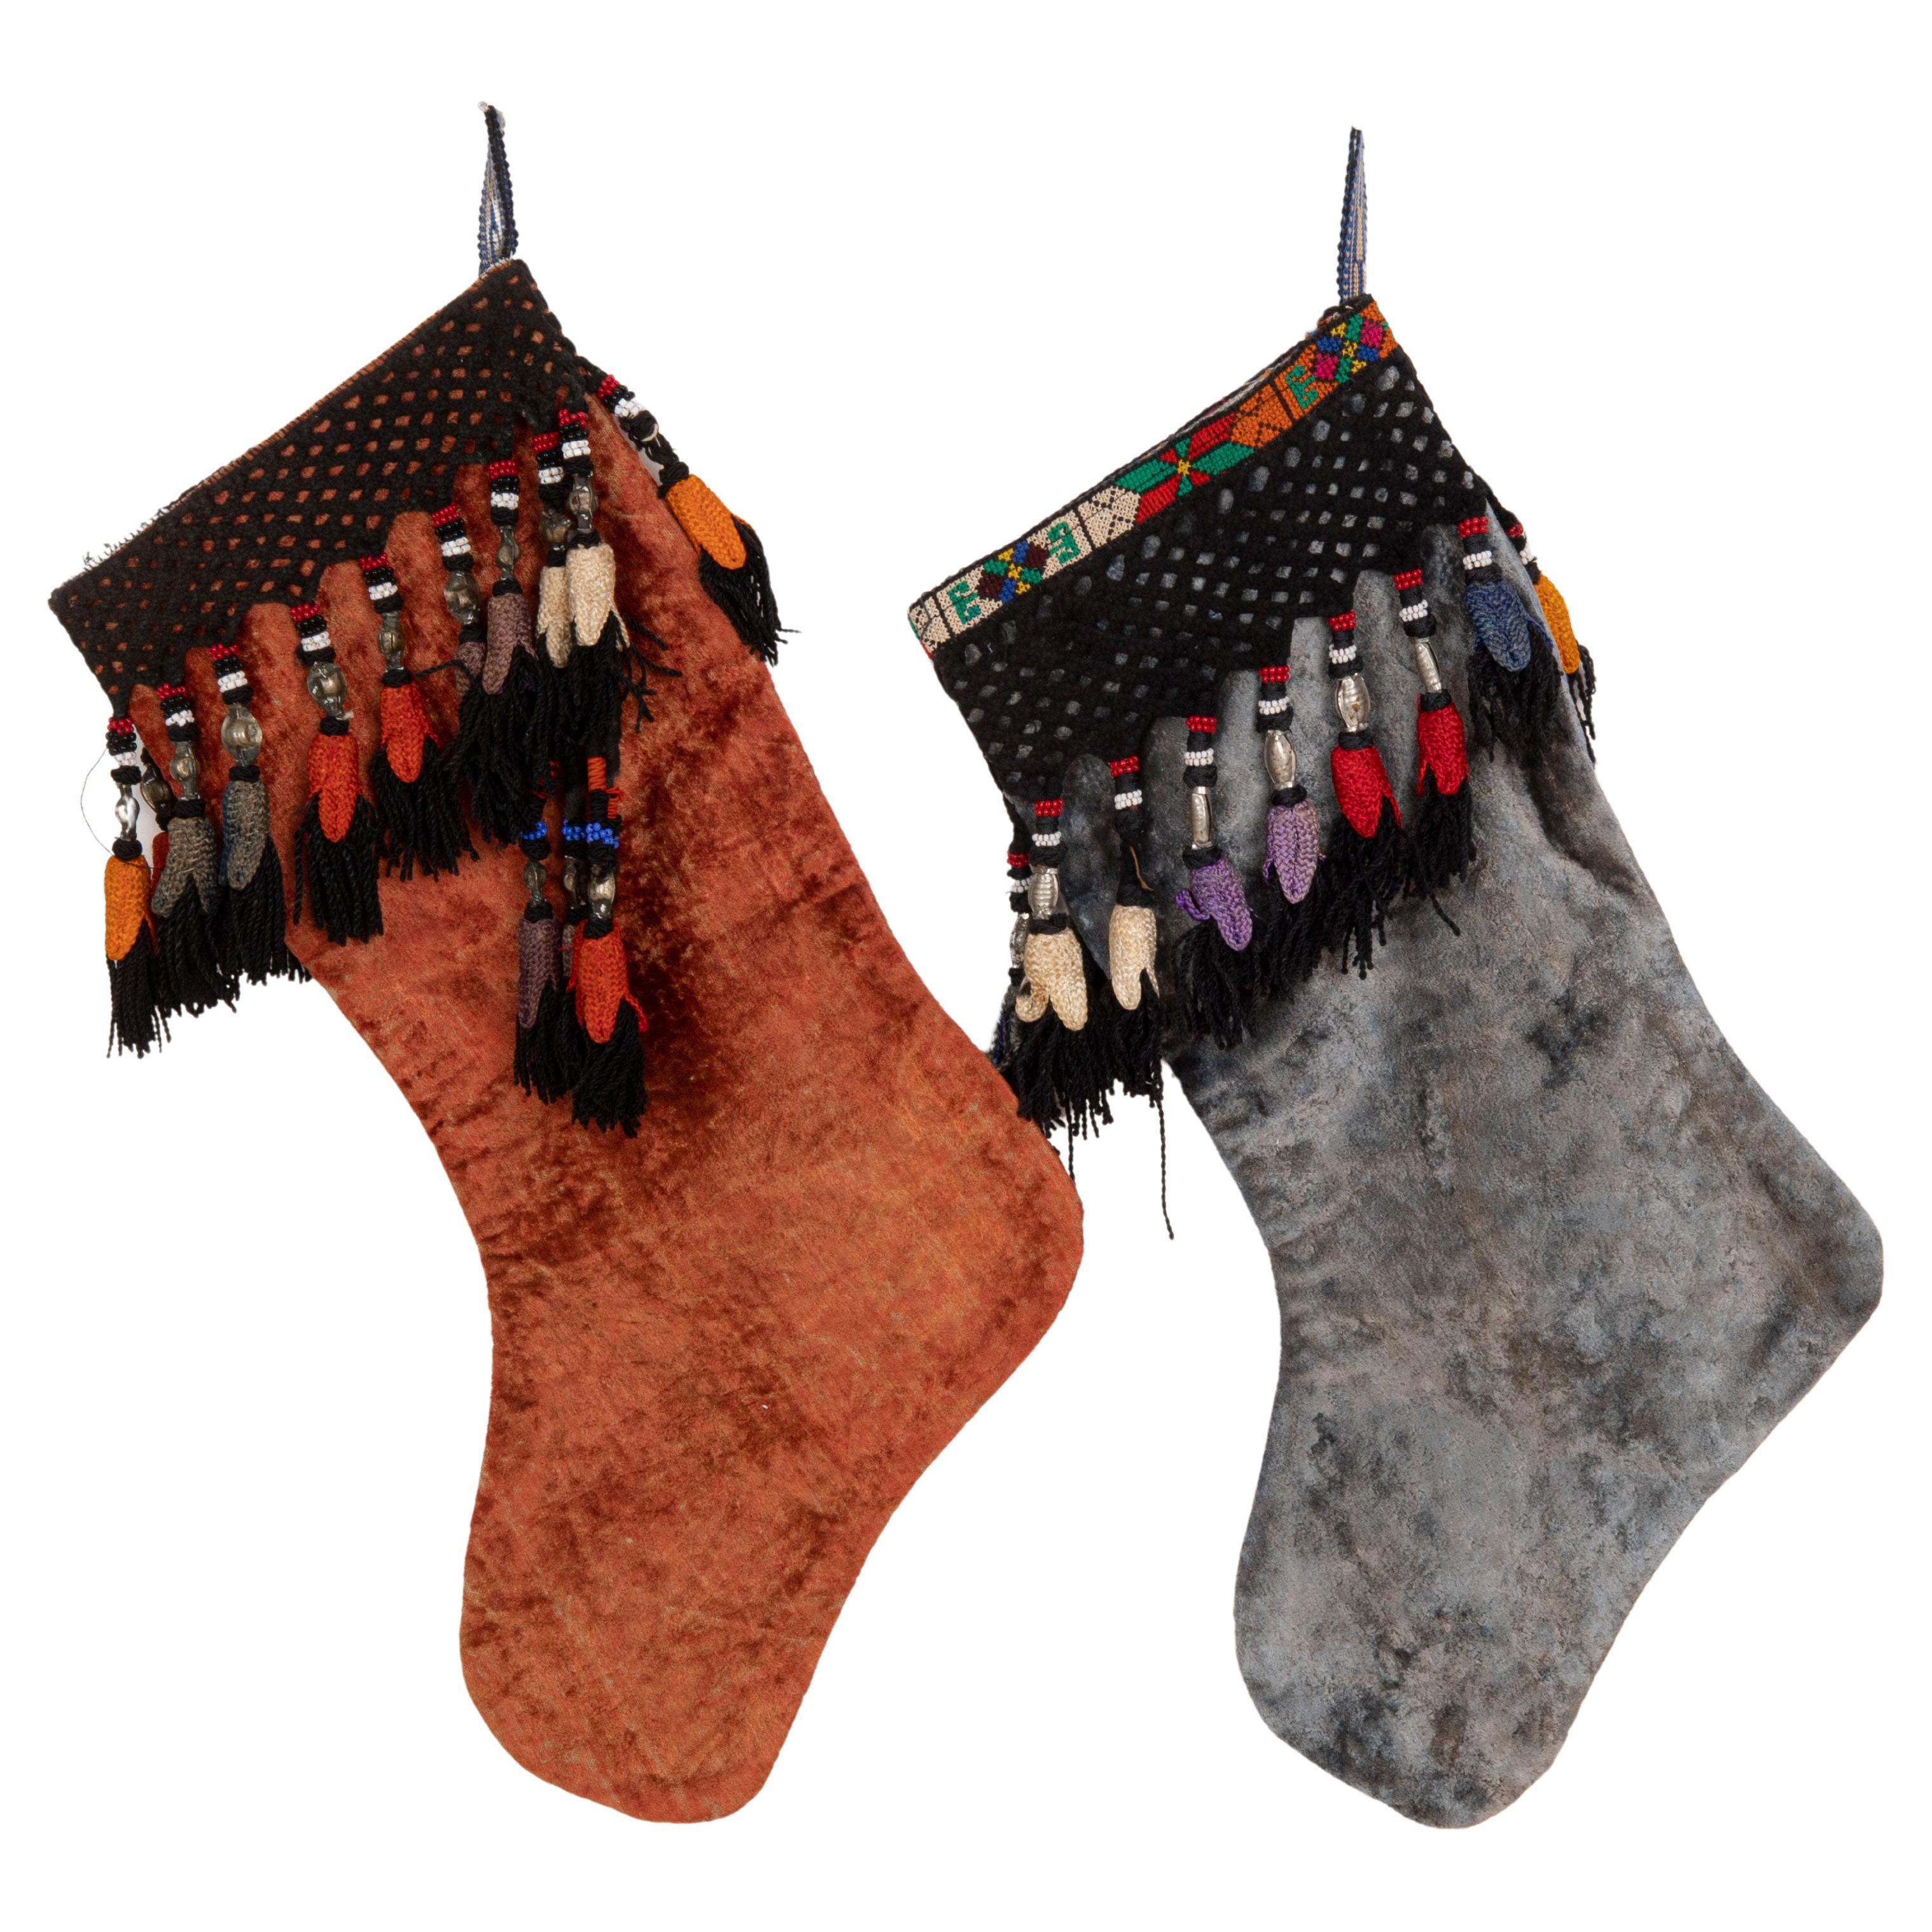 Doppelseitige Weihnachts Stockings aus altemzbekischem Samt mit Vintage-Fragmenten